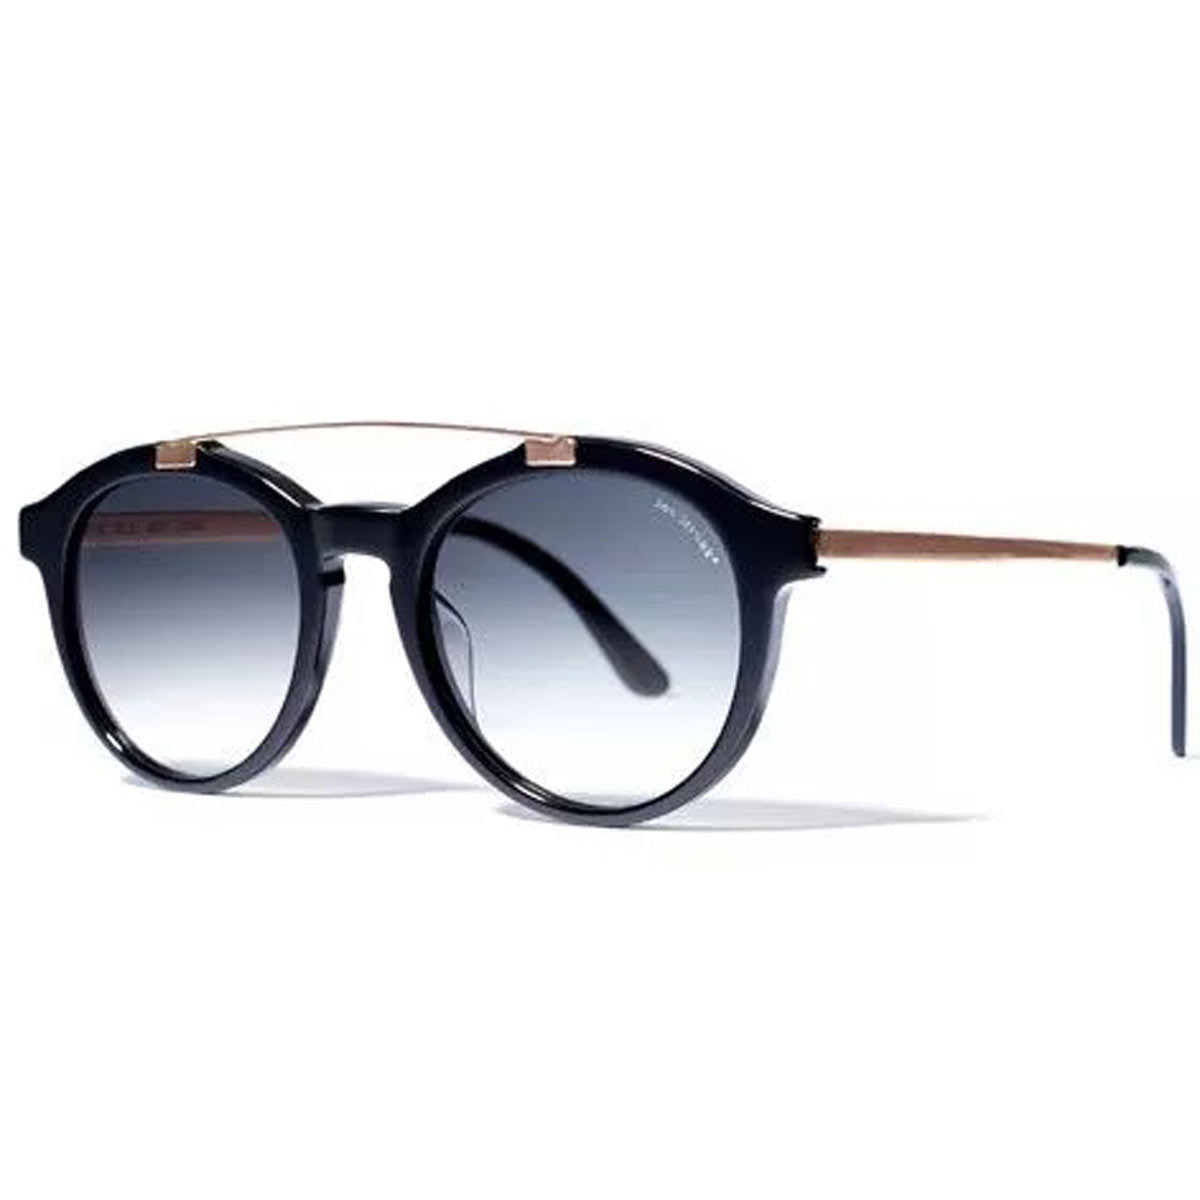 Bob Sdrunk Women's Sunglasses - Matias Black and Copper / MATIAS-01RM-BGG-45-25-145